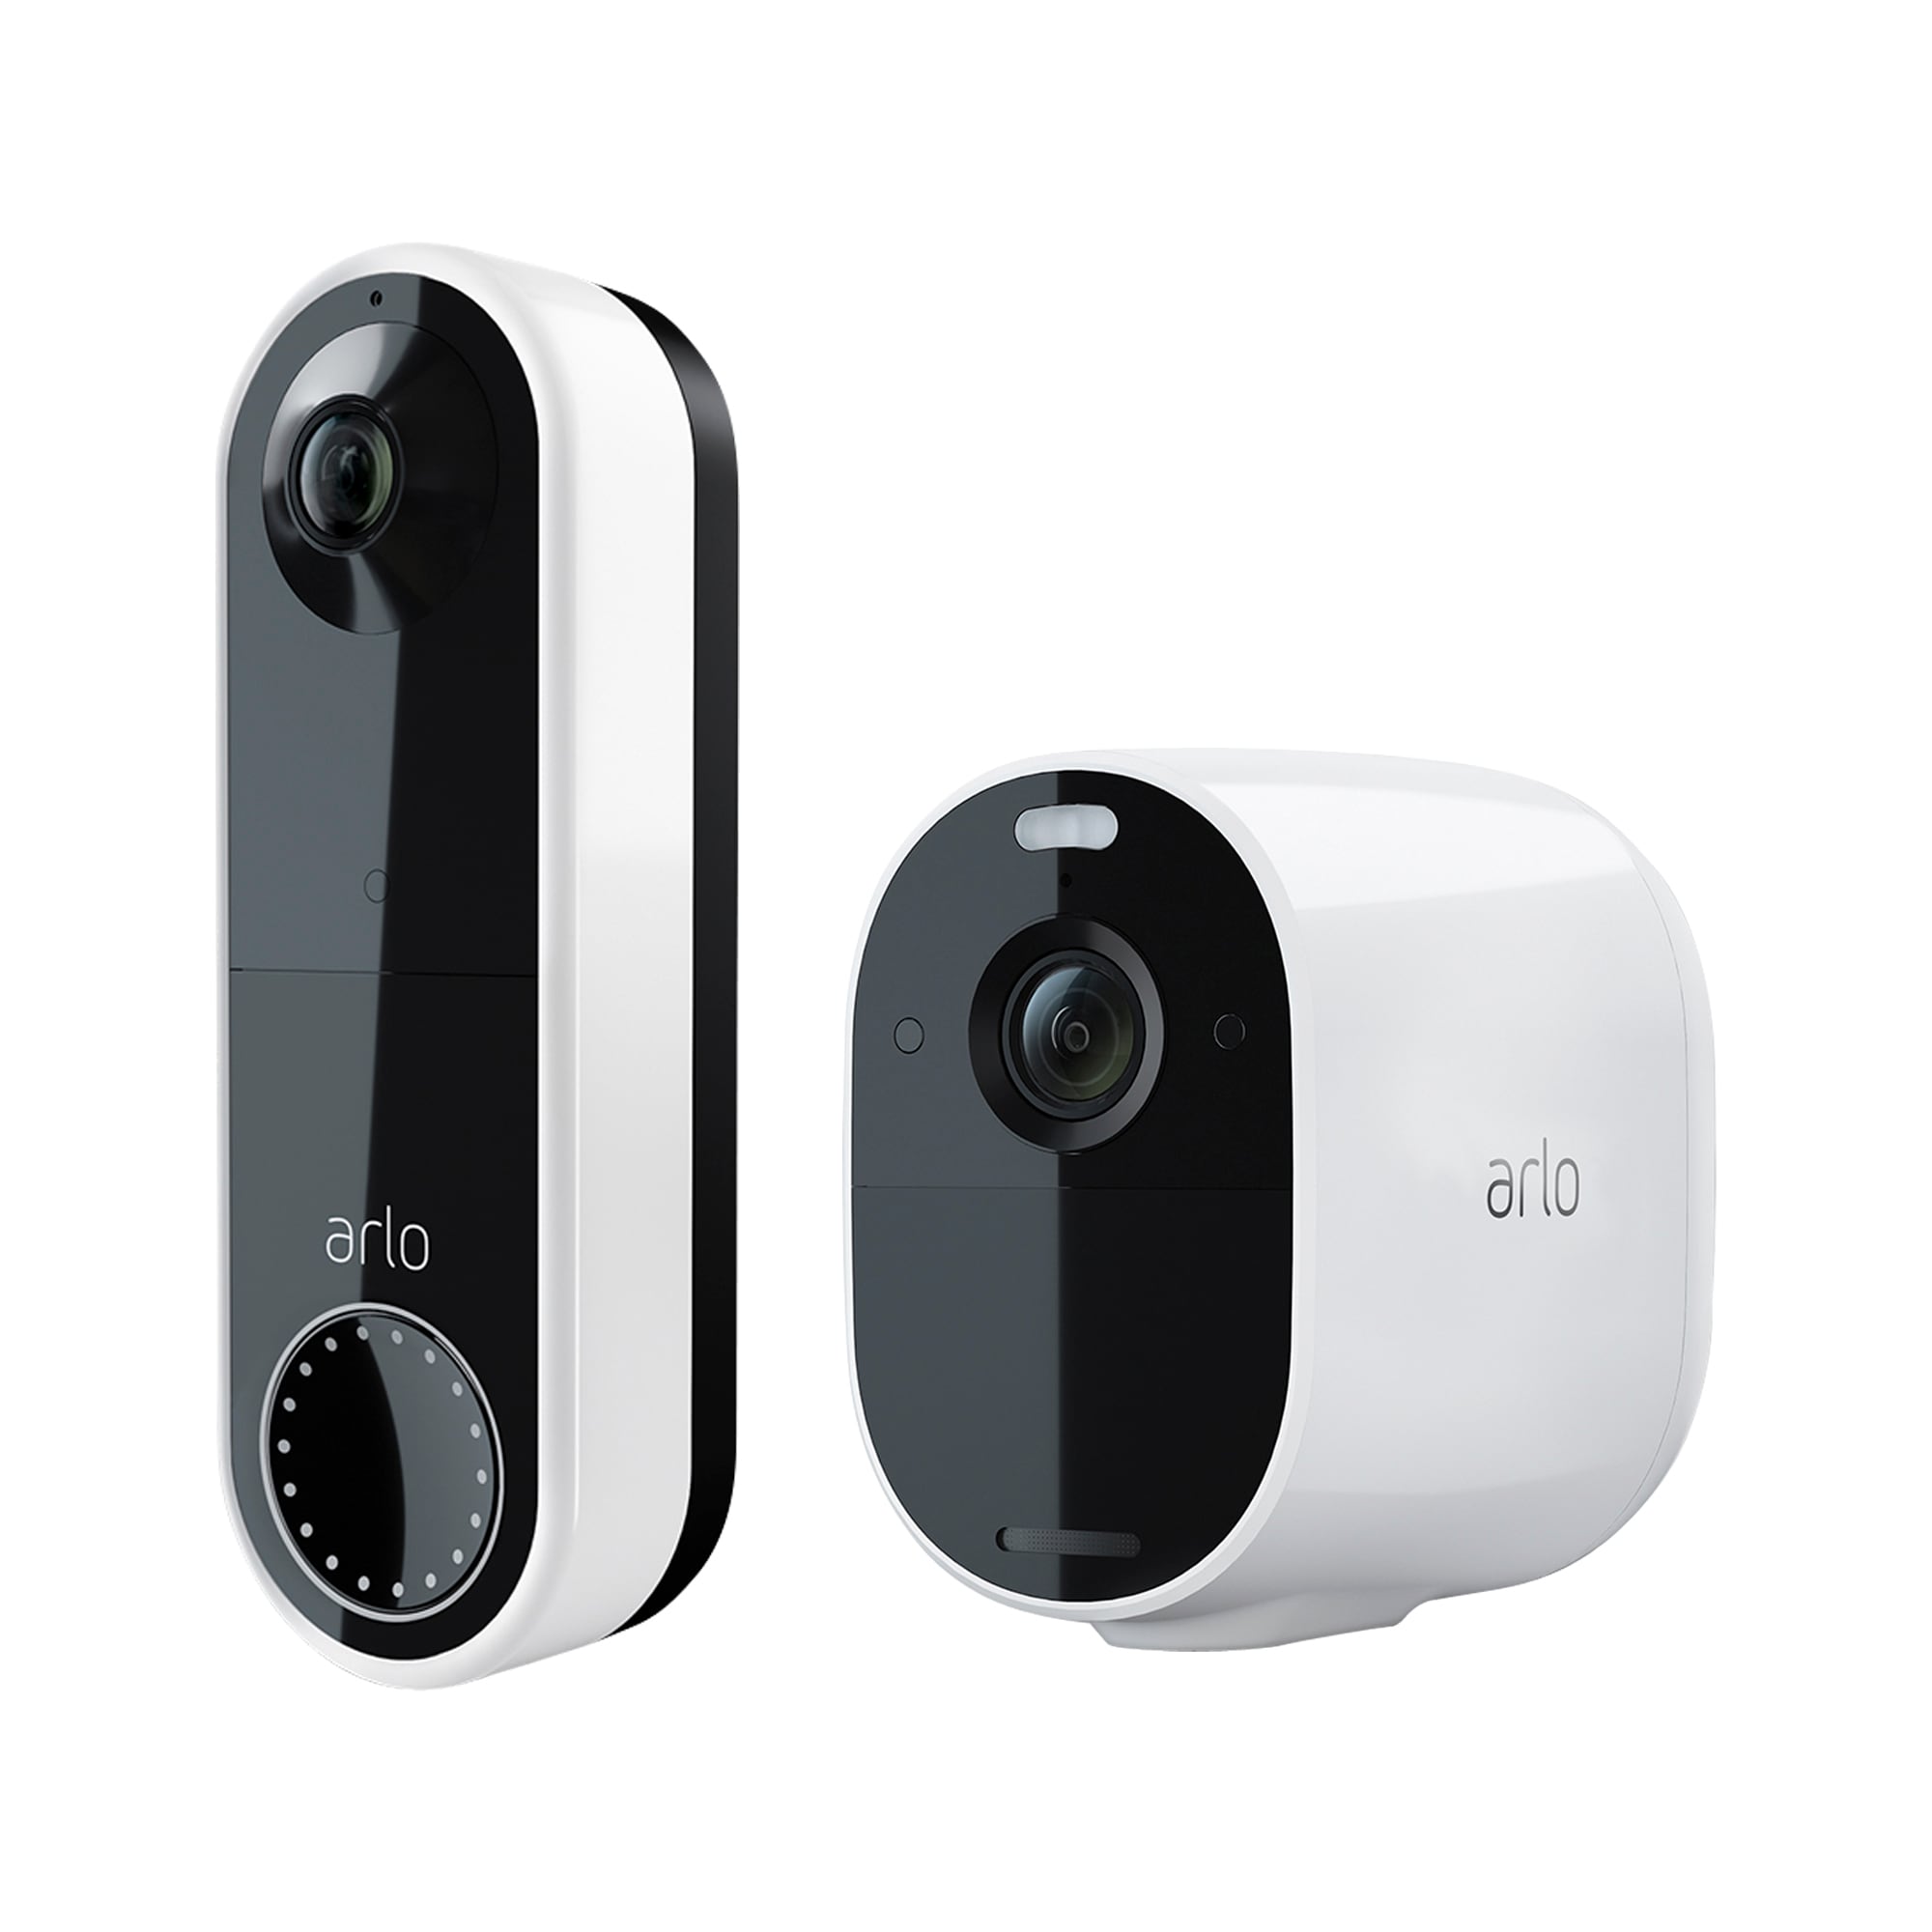 8 Best Deals on Arlo Security Cameras and Video Doorbells